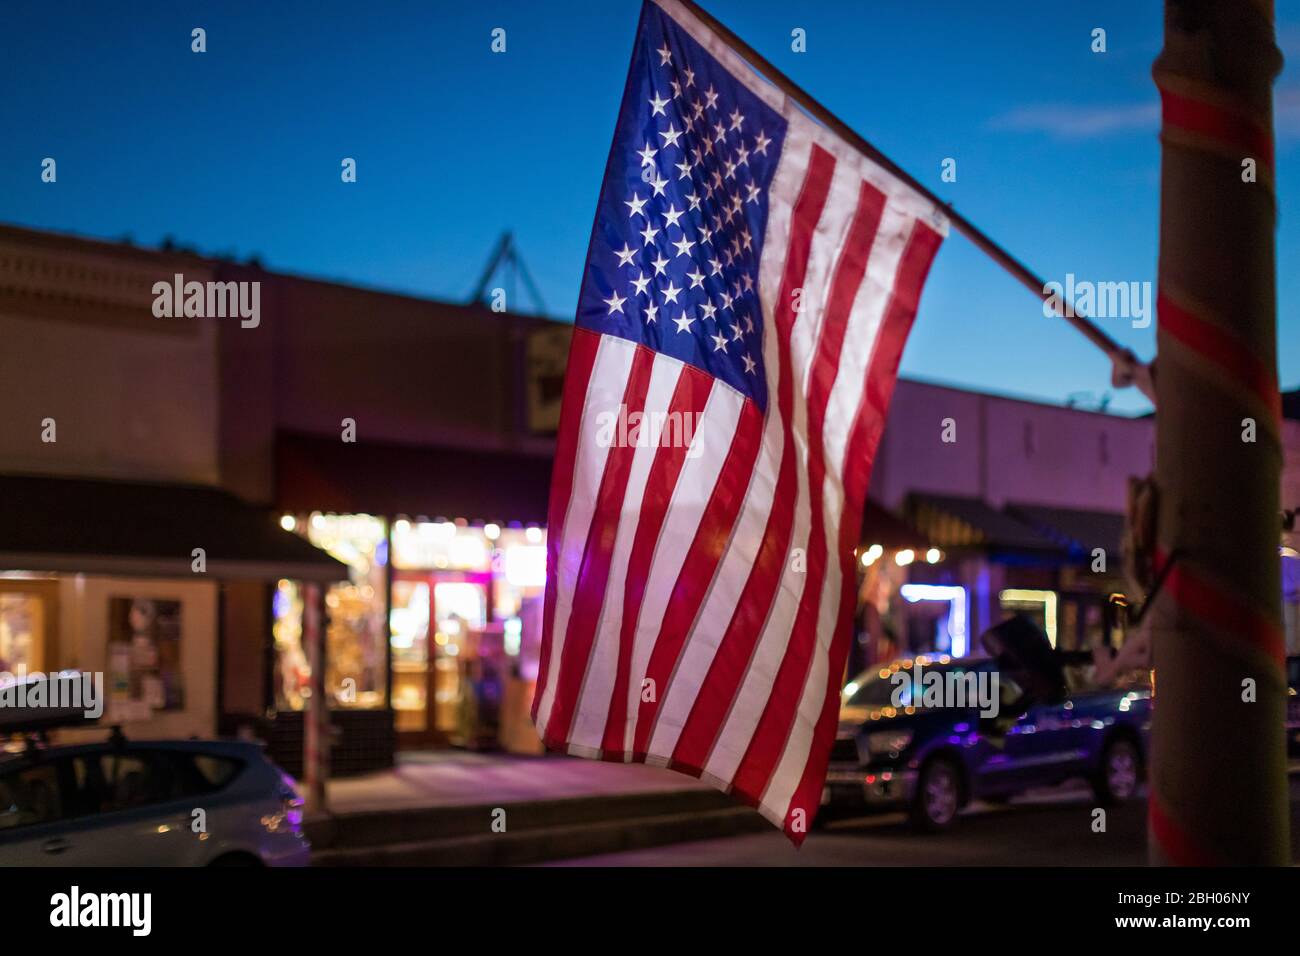 In der Abenddämmerung hängt eine amerikanische Flagge vor einem Geschäft in einem kleinen südwestlichen Dorf Stockfoto